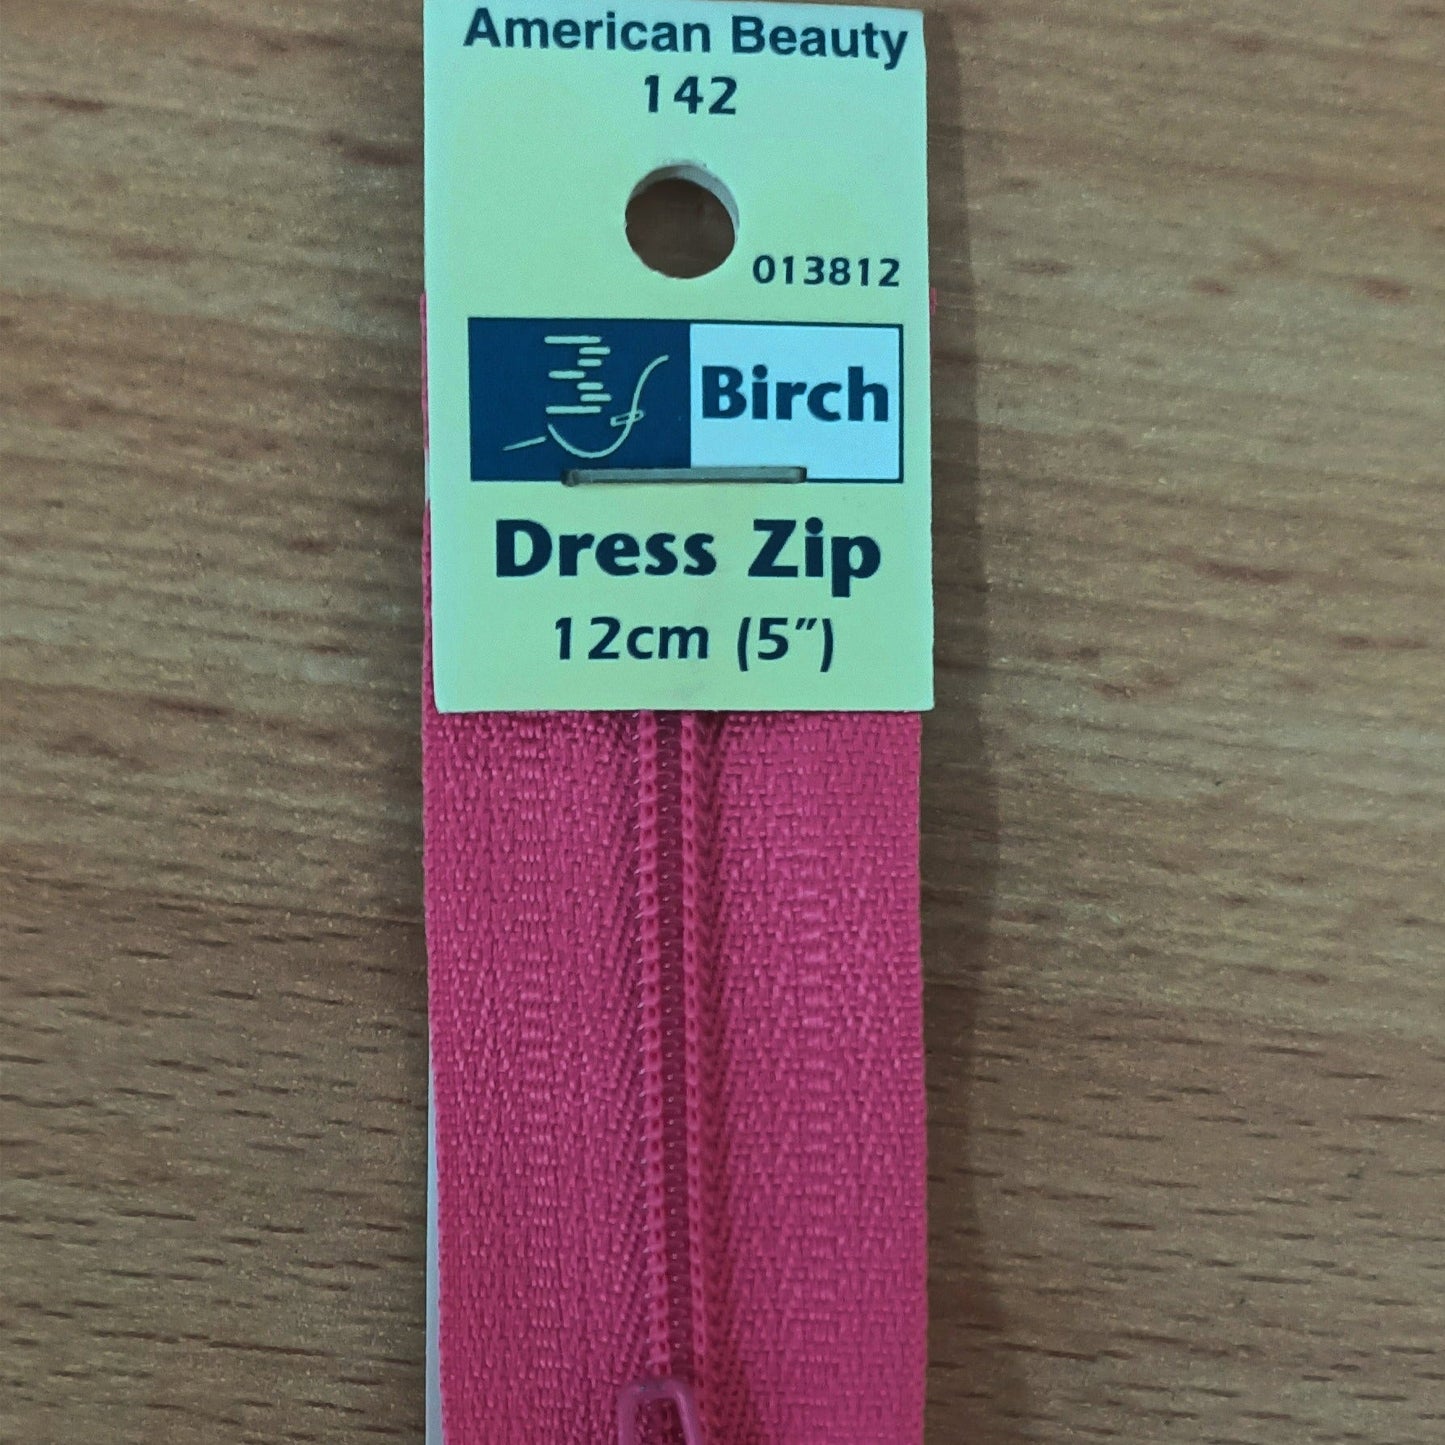 Dress Zip 30cm (12")